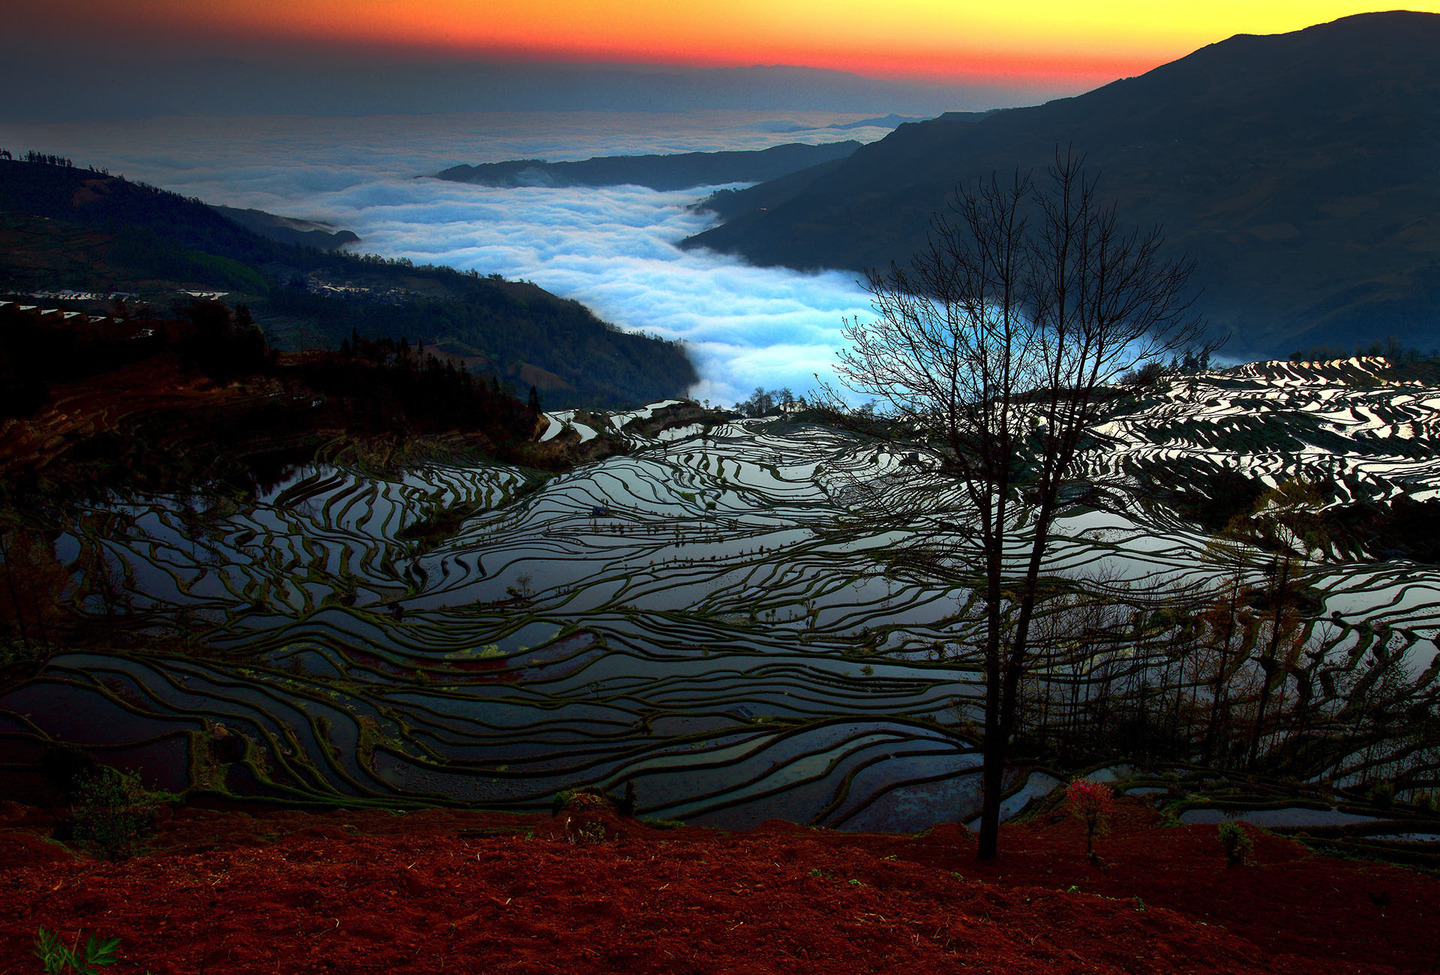 China Yuan Yang sunrise by Chee Keong Lim